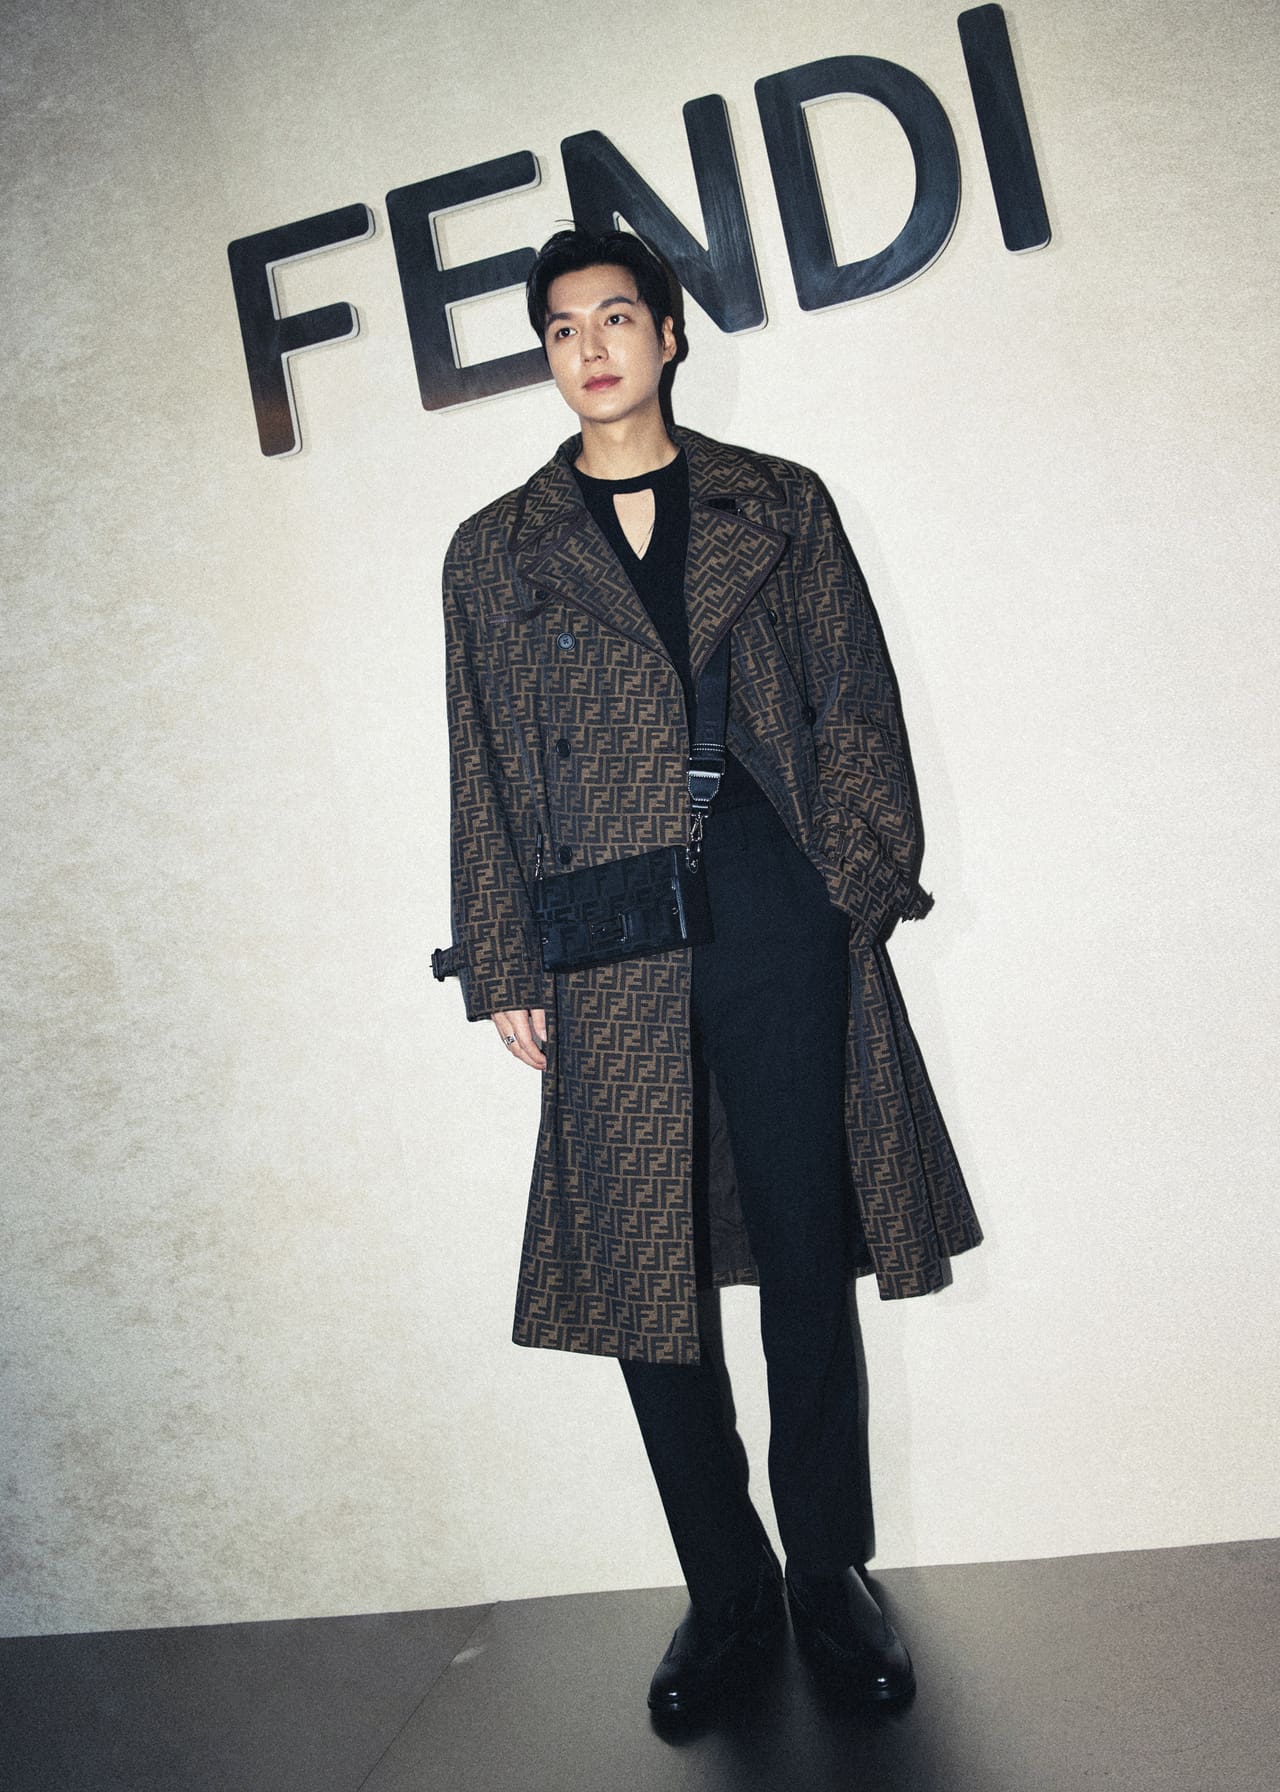 Fendi Welcomes Lee Min-Ho as Its New Korean Brand Ambassador